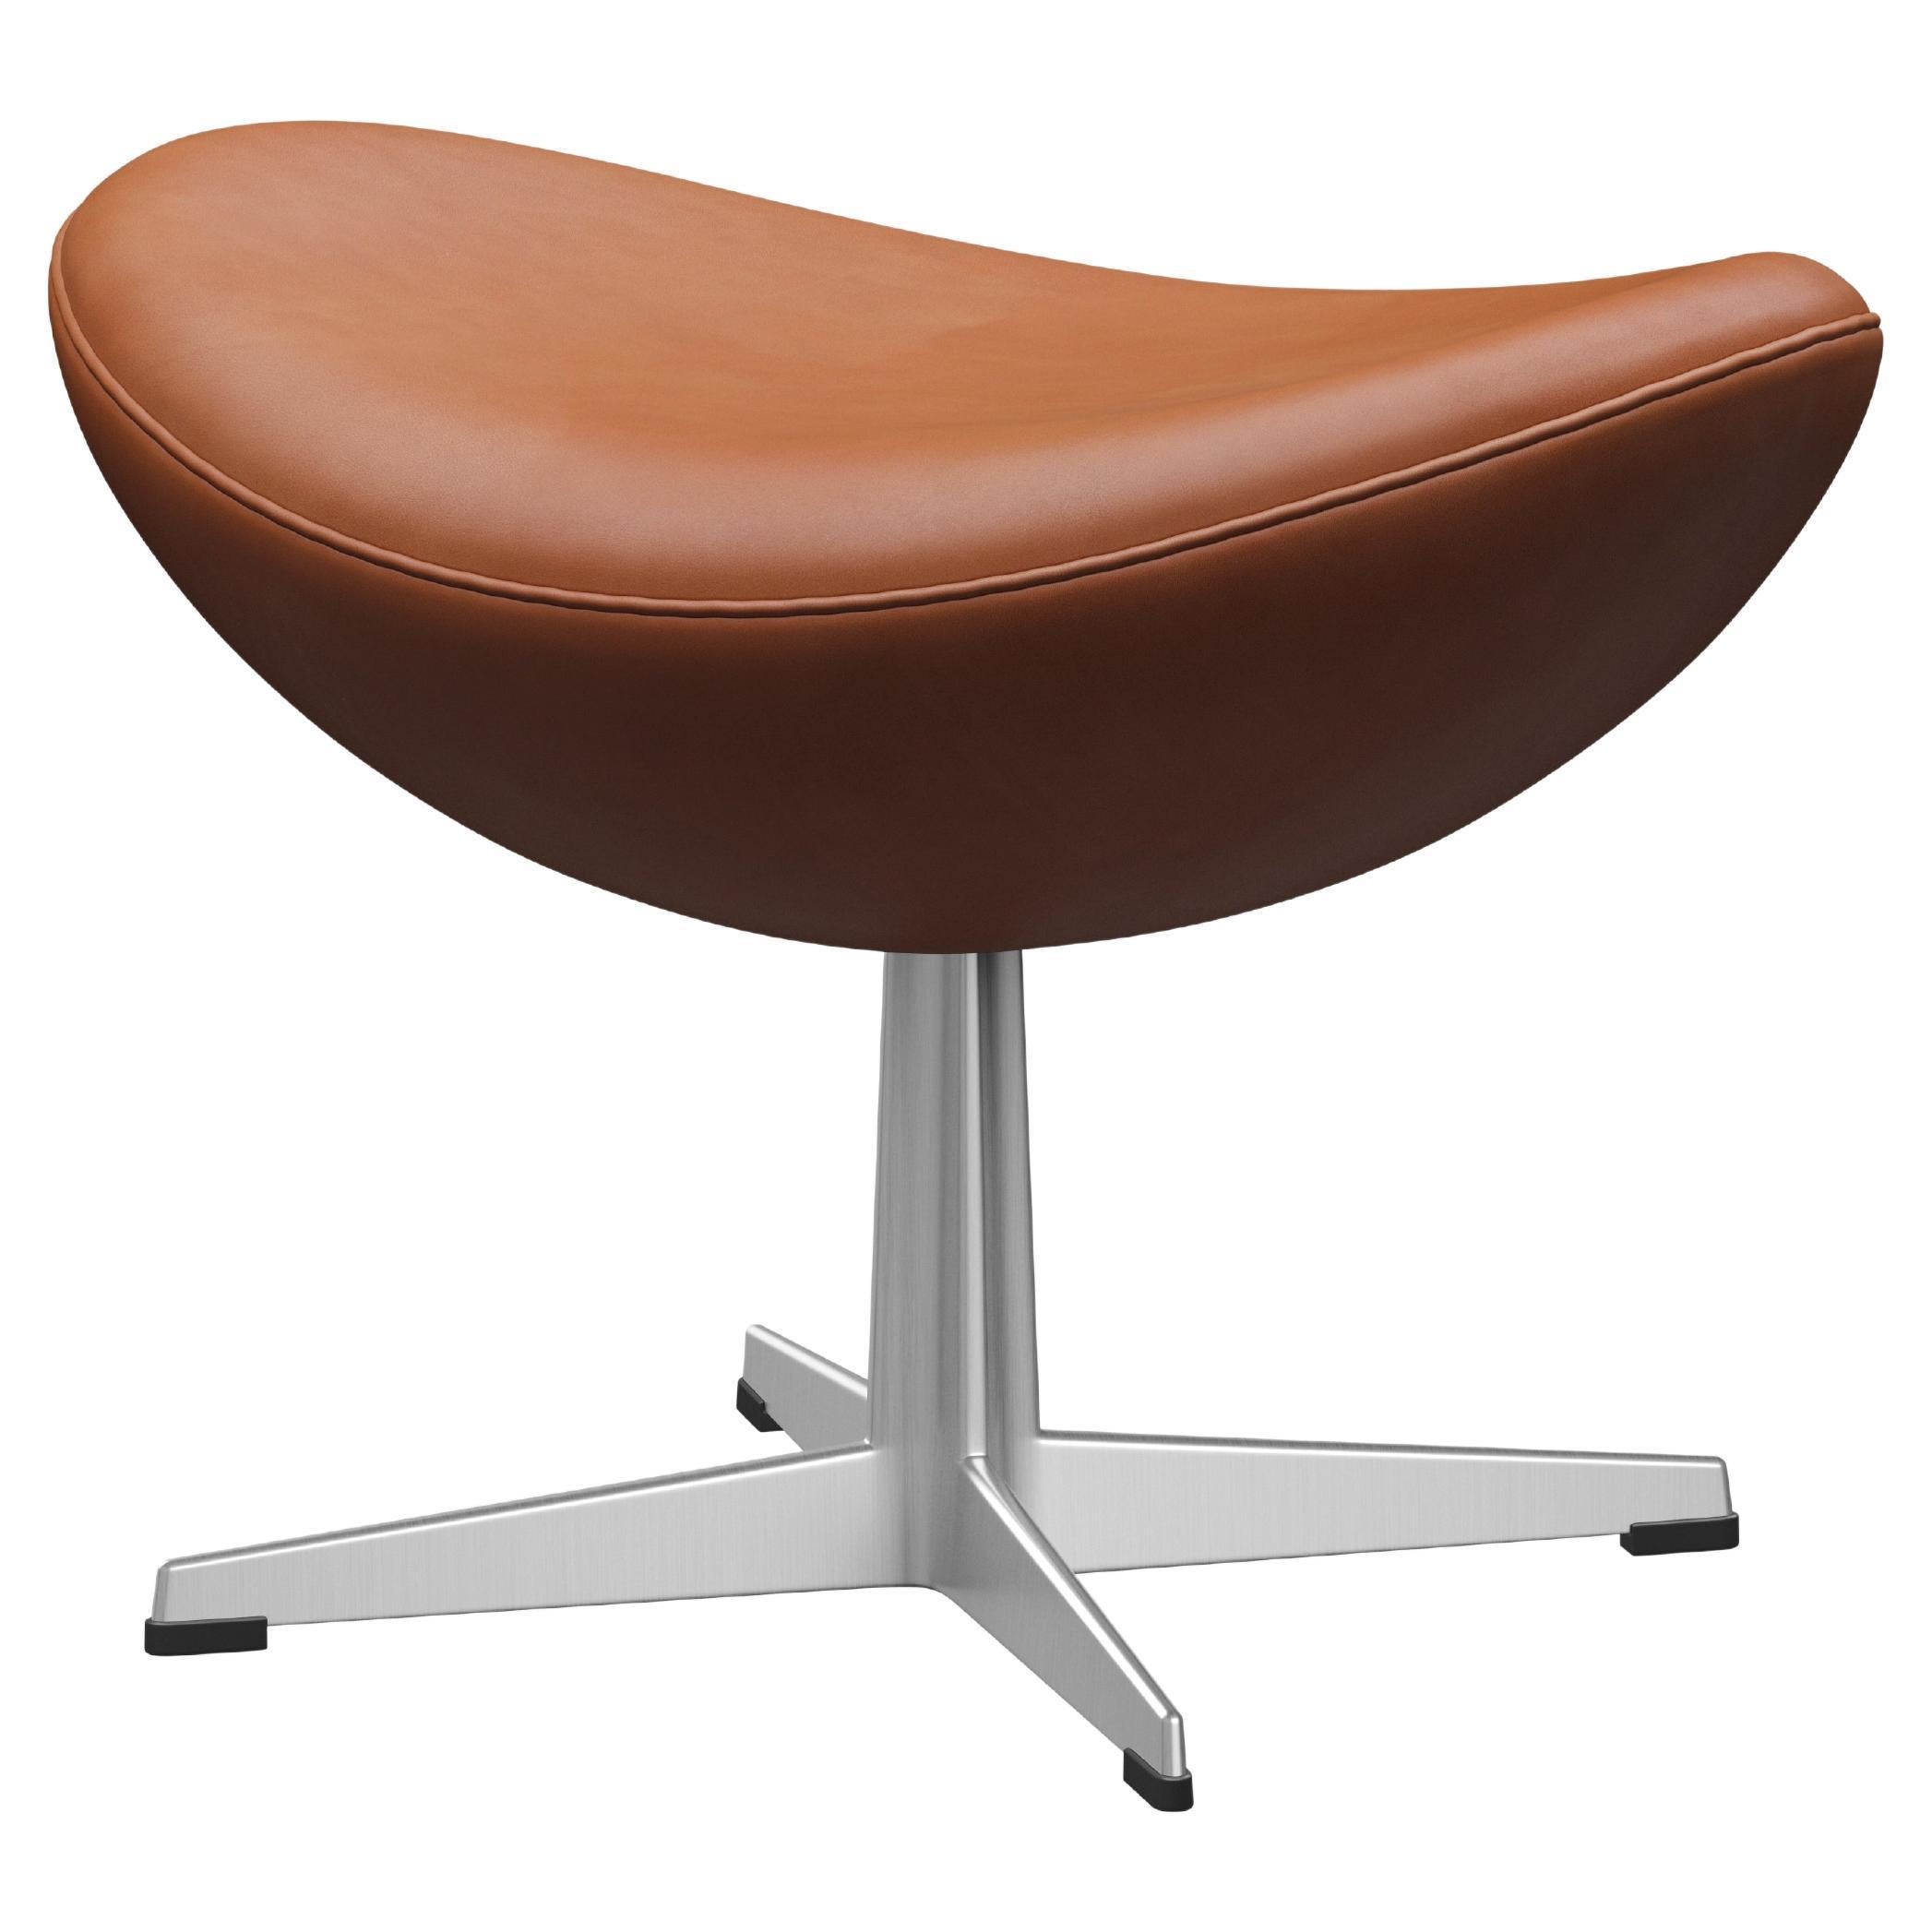 Arne Jacobsen 'Egg' Footstool for Fritz Hansen in Leather Upholstery (Cat. 5) For Sale